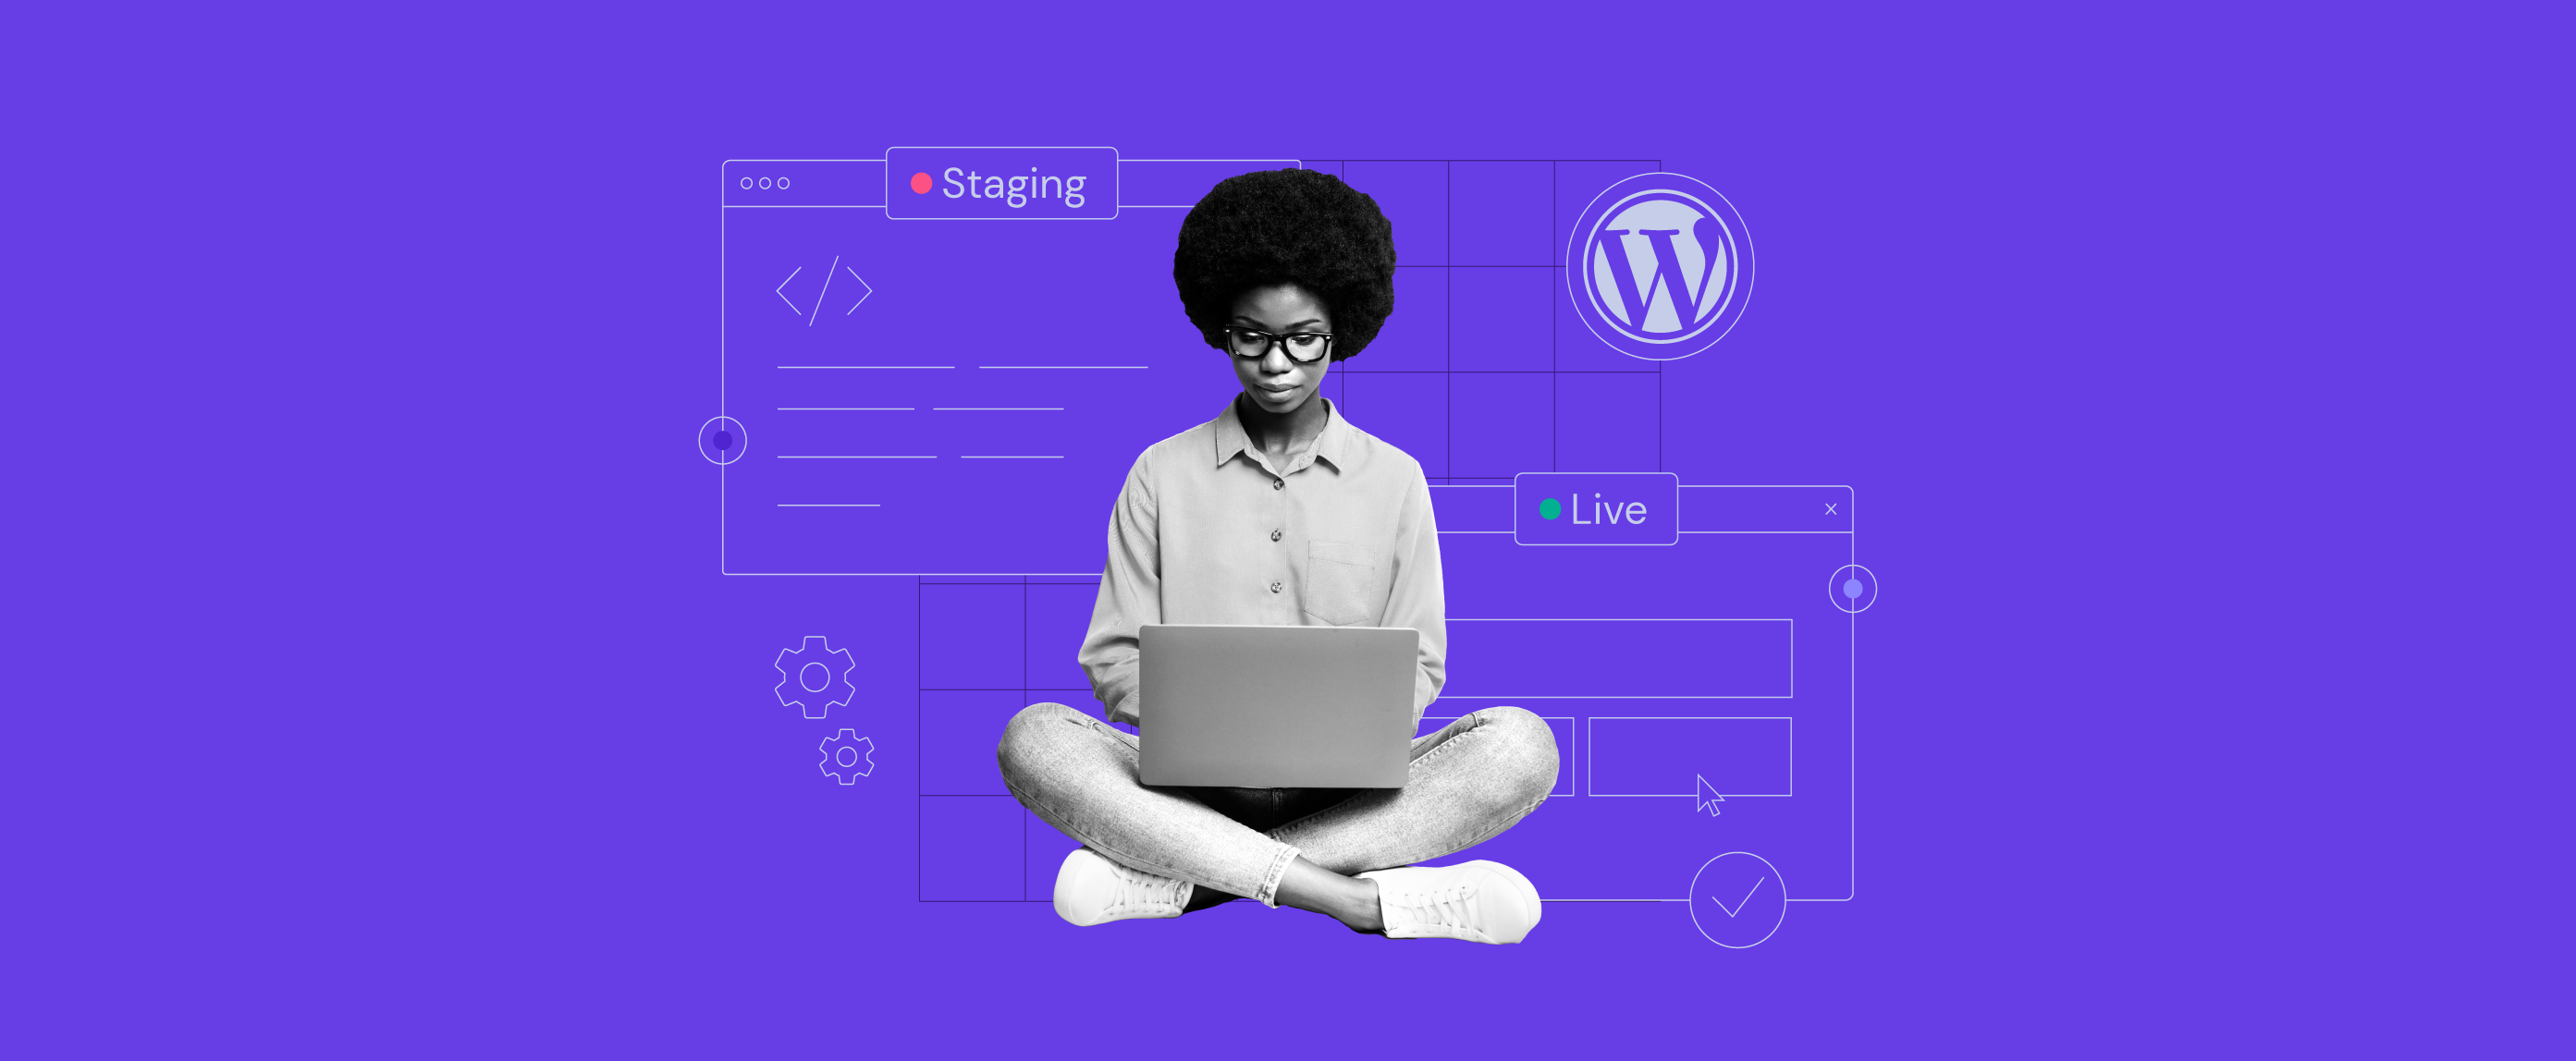 Presentamos la herramienta Staging para WordPress de Hostinger: prueba tu sitio web antes de publicarlo